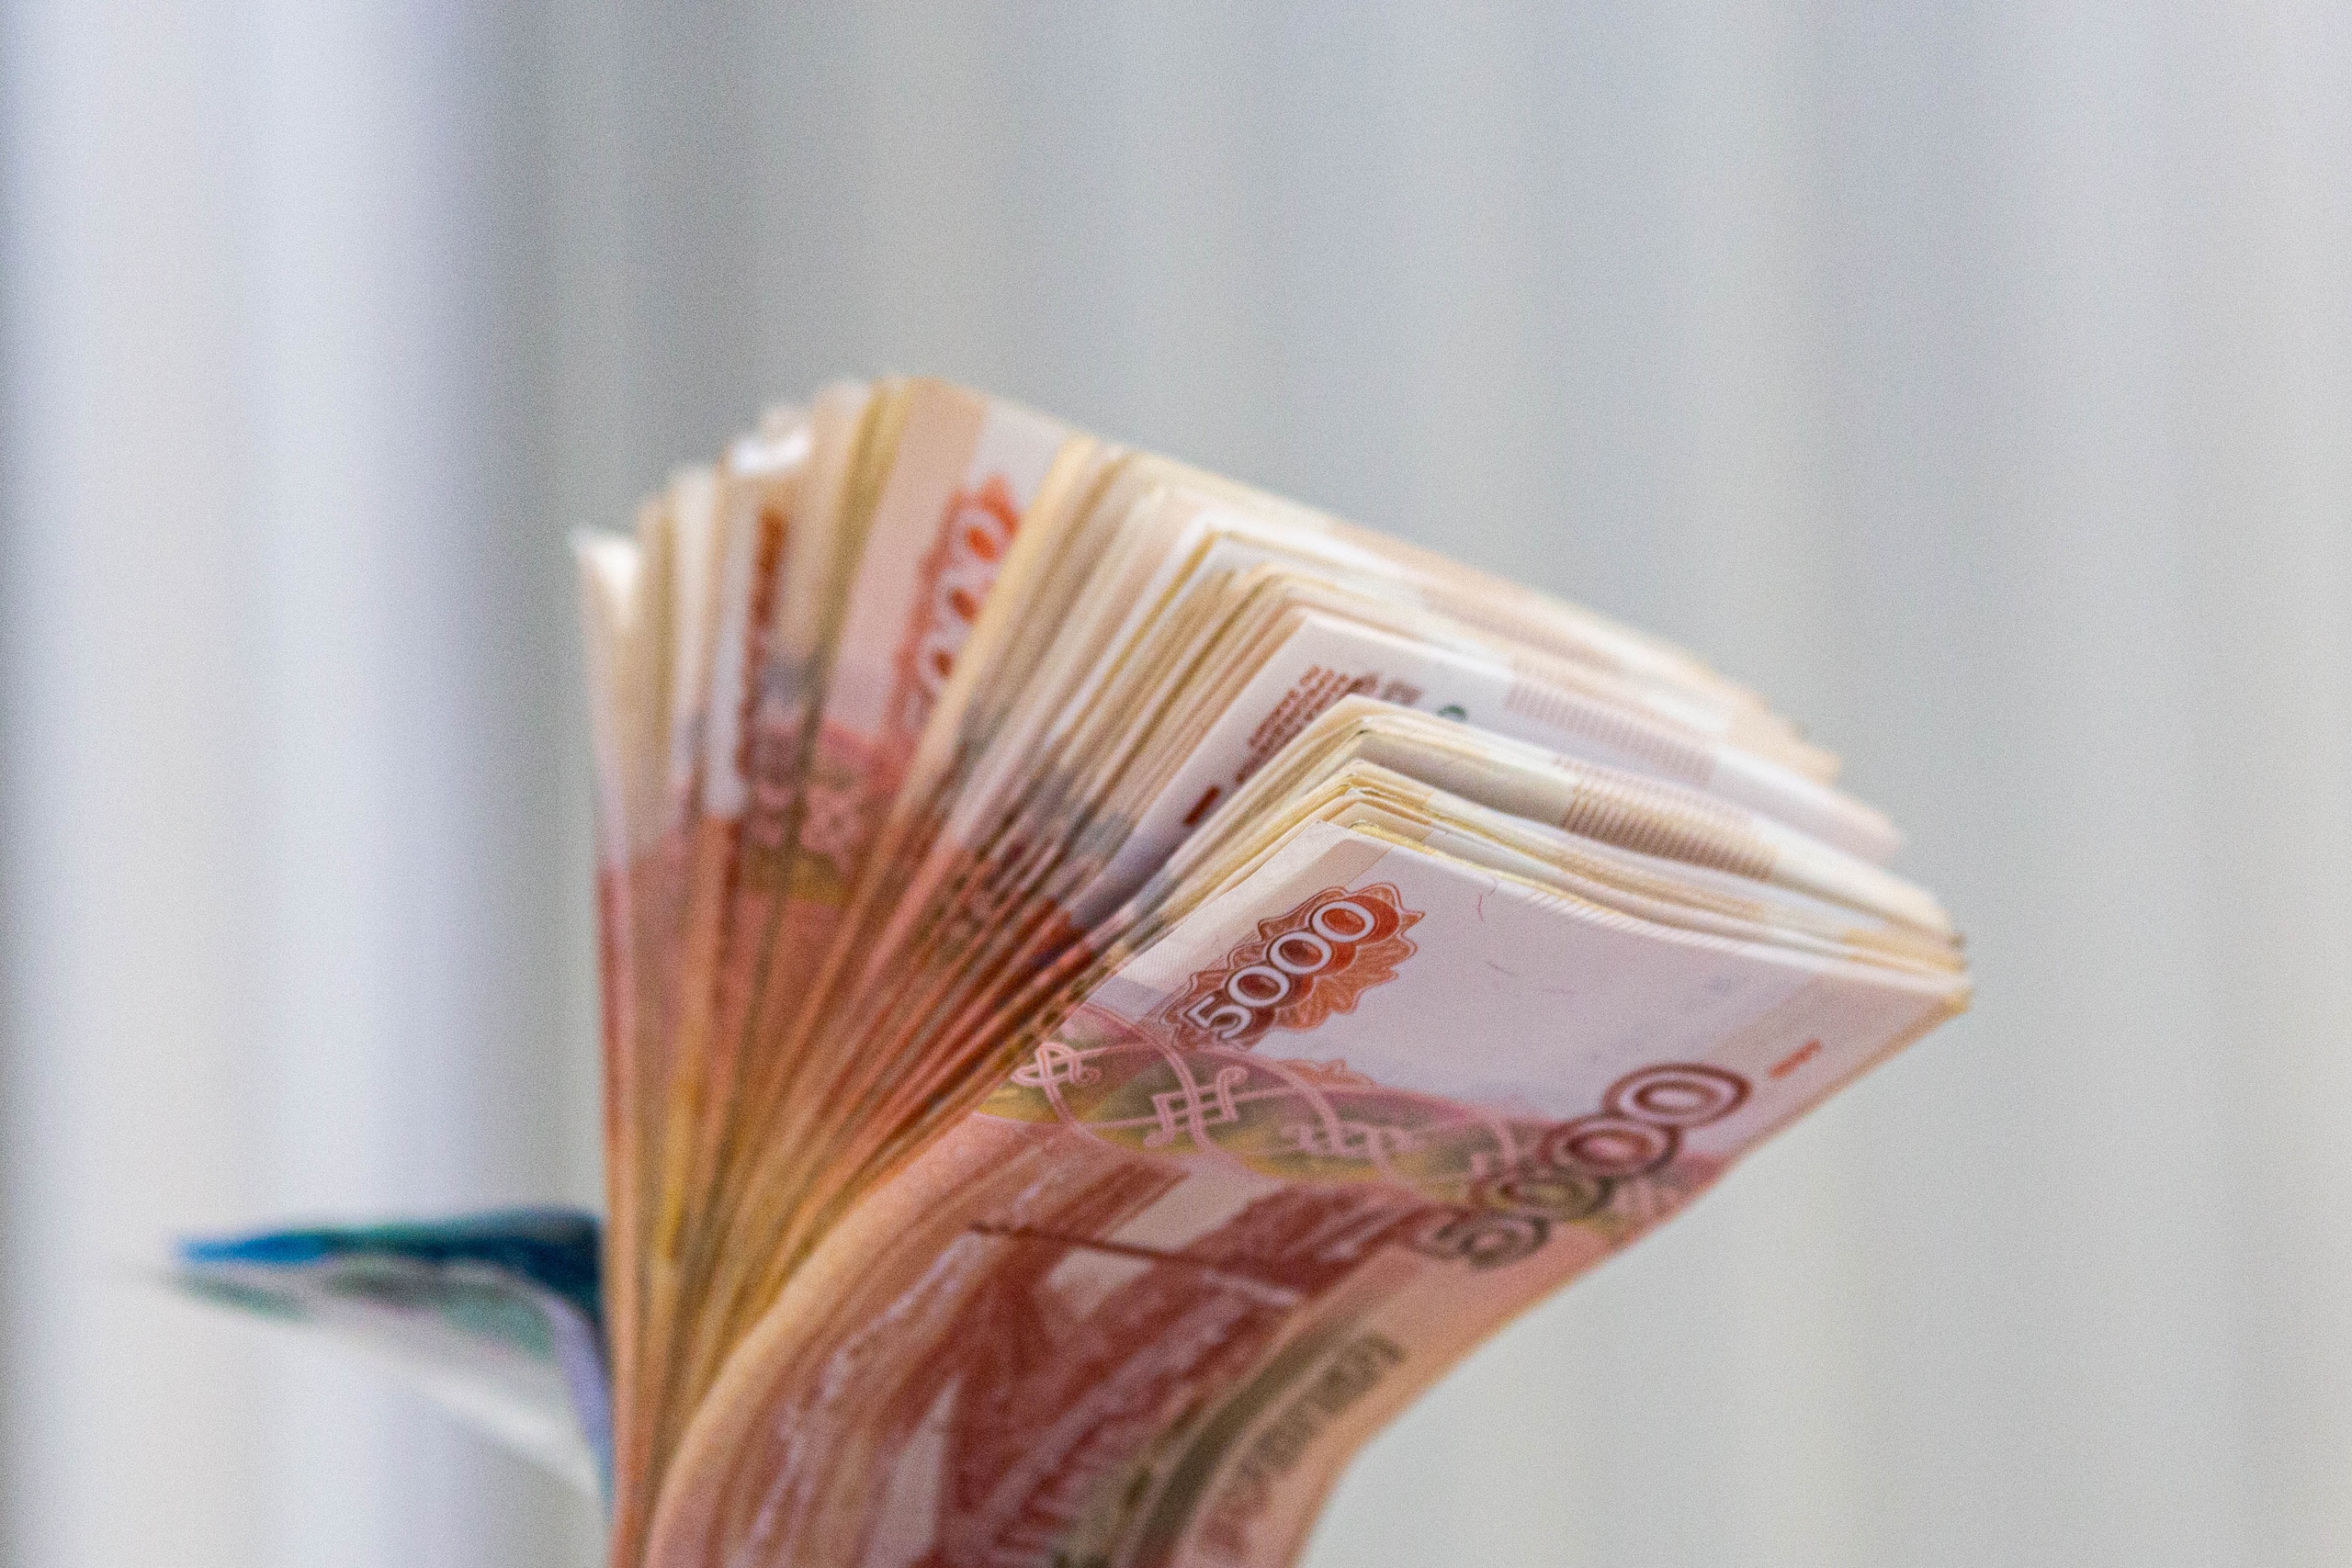 Мужчину оштрафовали на 30 тысяч рублей за лжеминирование дома в Новосибирске